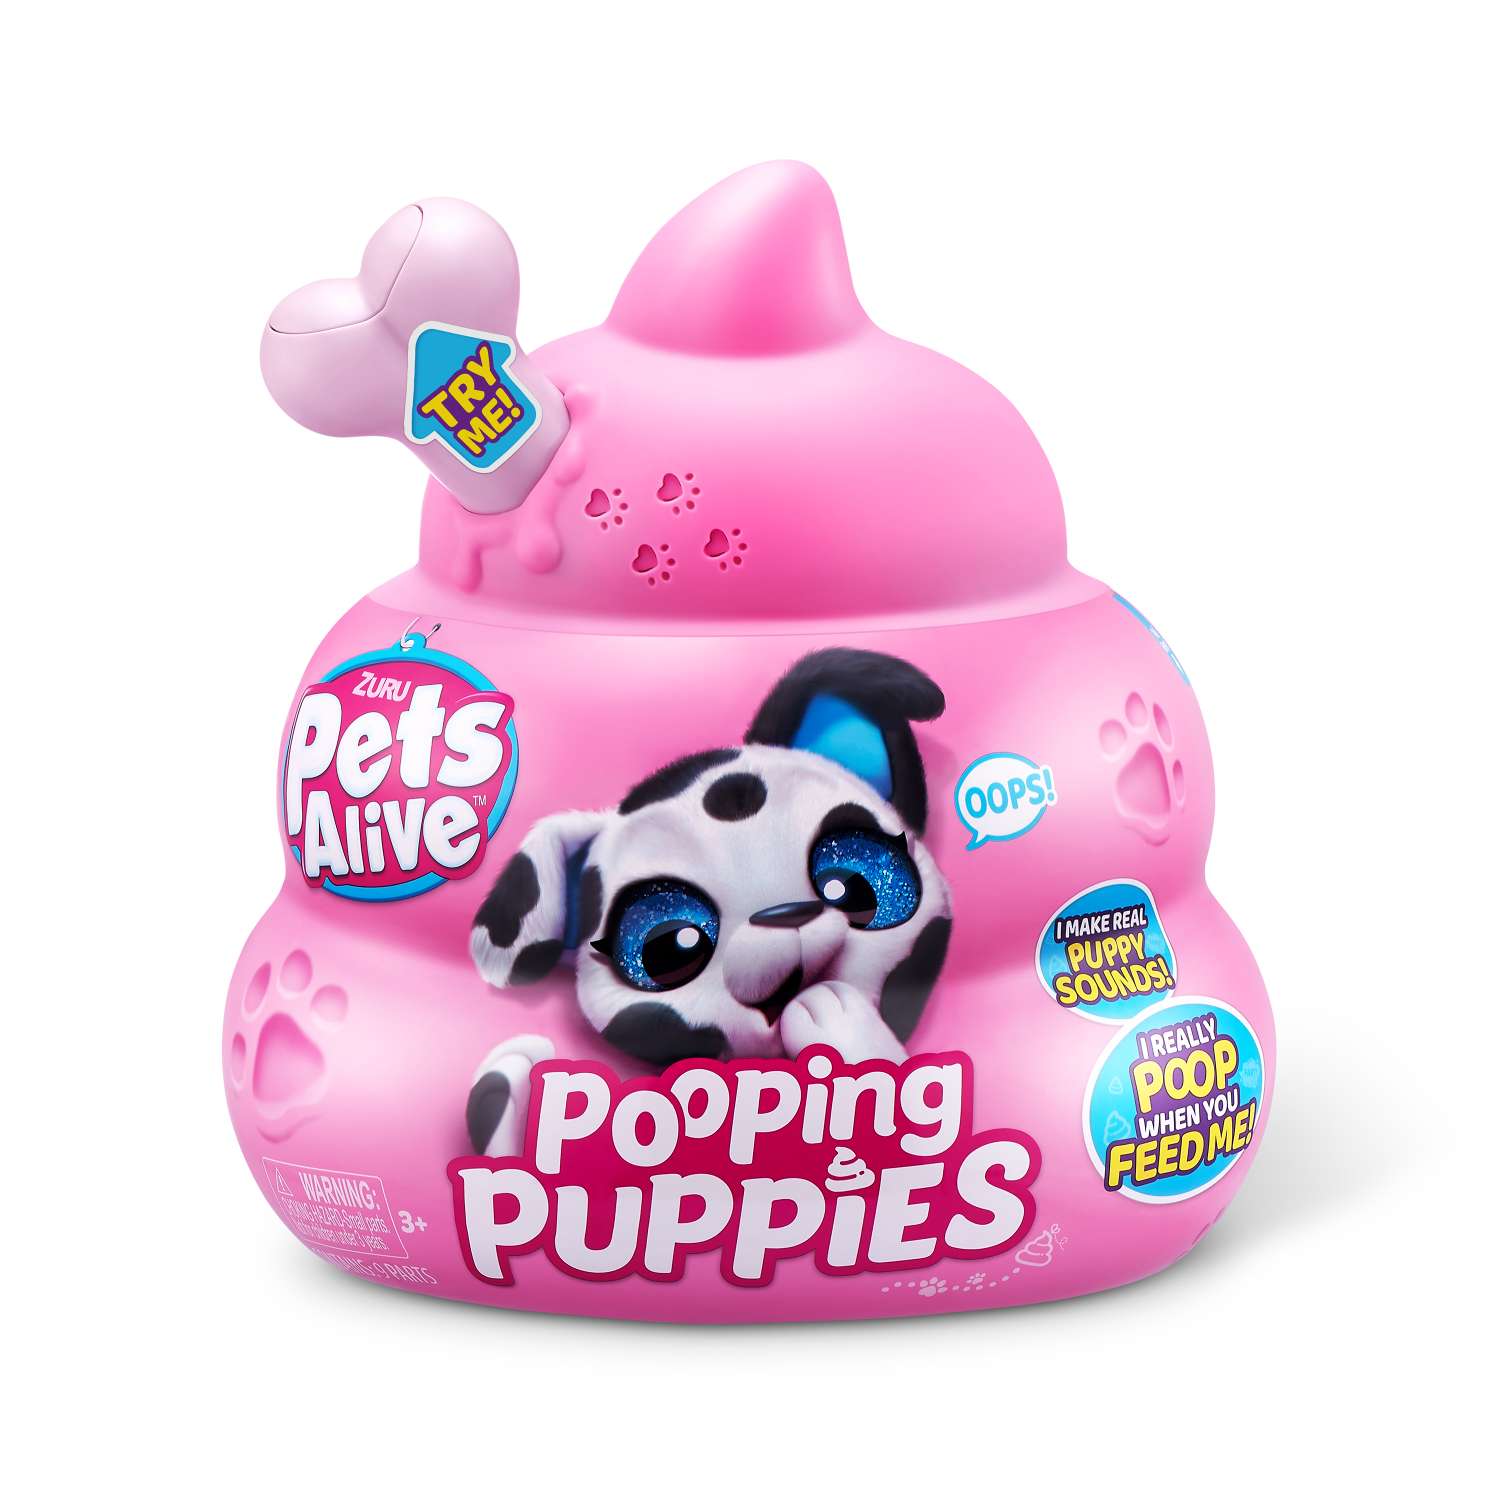 Игрушка Pets Alive Pooping Puppies Капсула в непрозрачной упаковке (Сюрприз) 9542 - фото 10